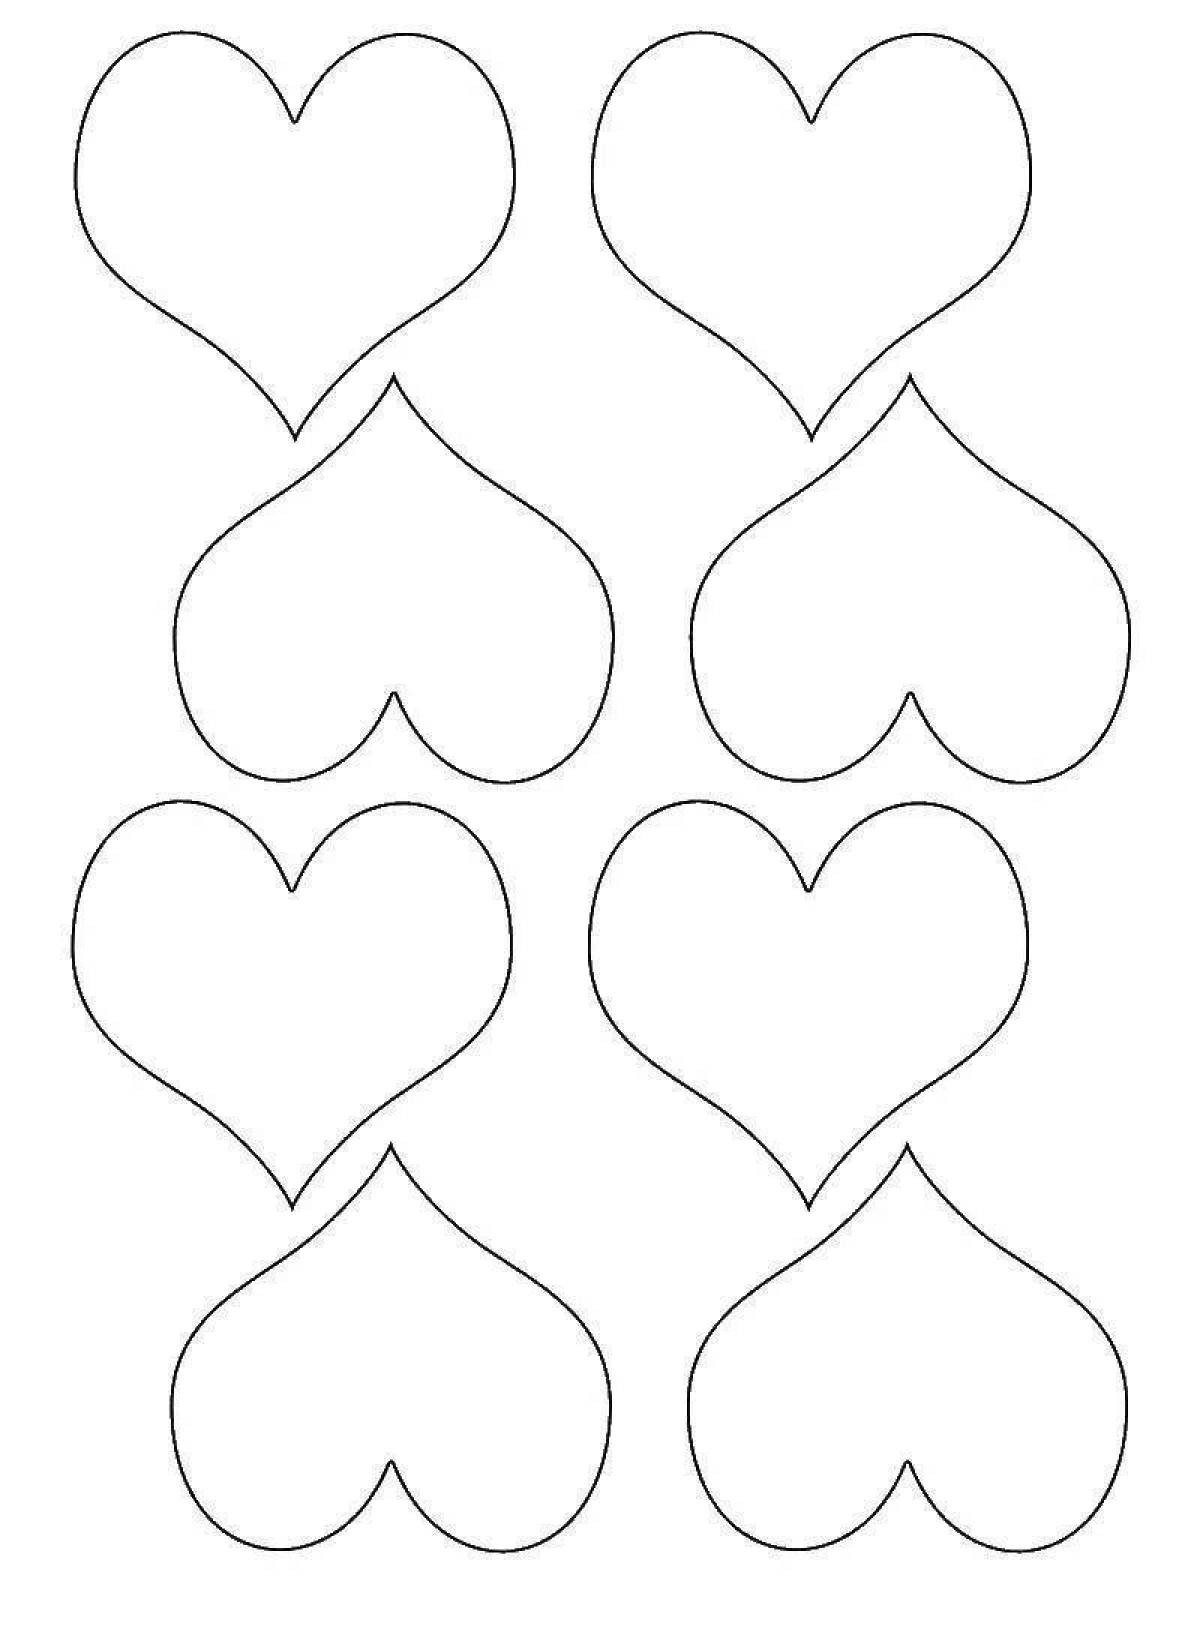 Трафарет сердечек для вырезания из бумаги распечатать